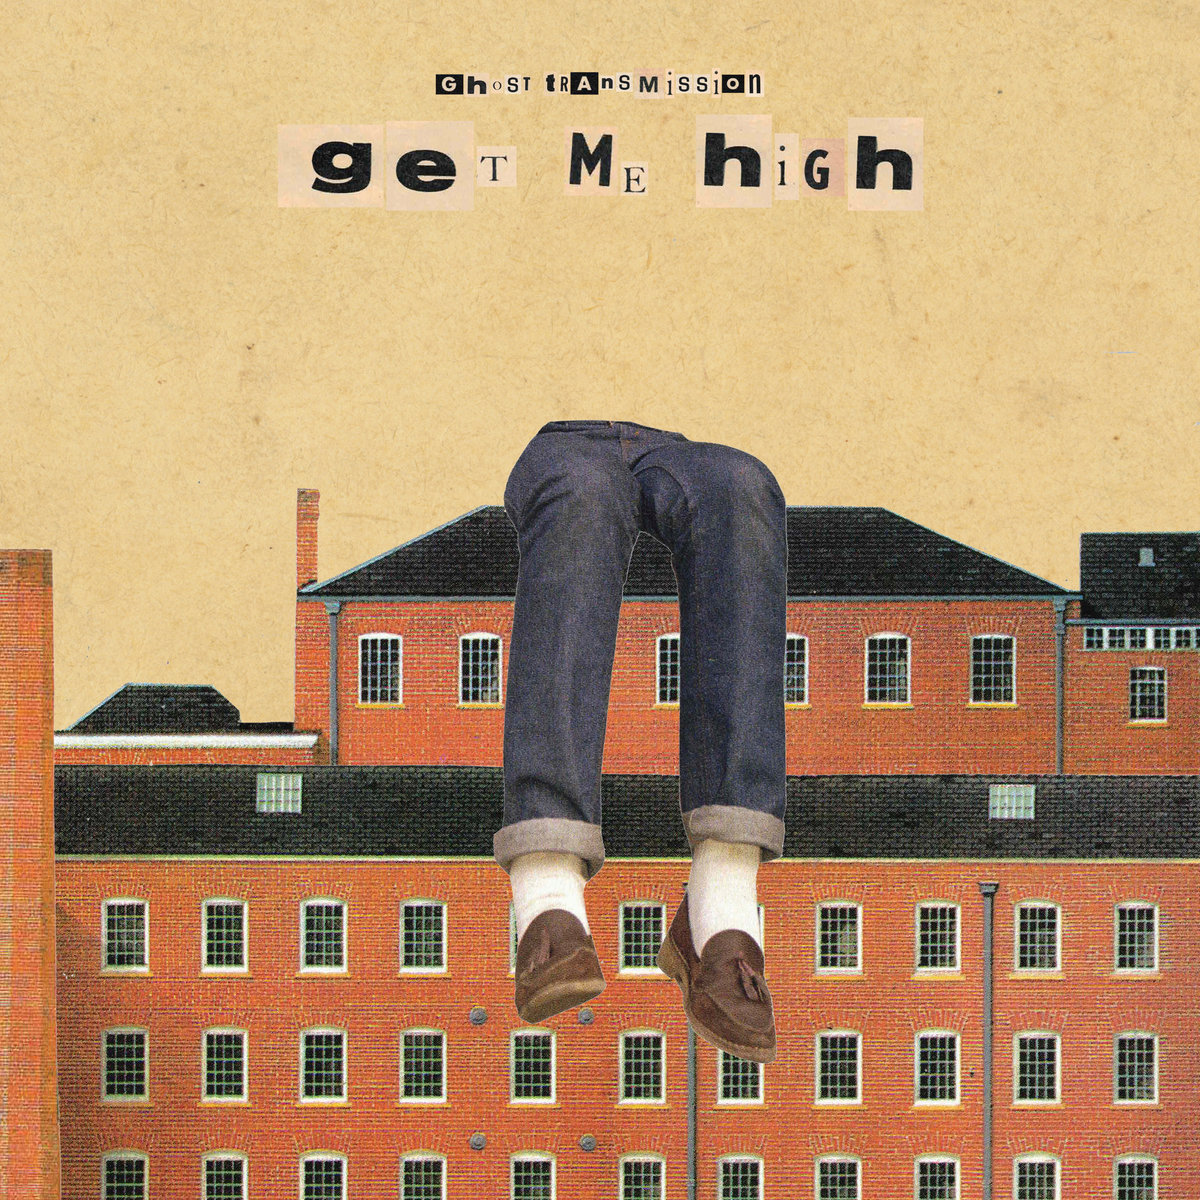 Ghost Transmission "Get me high" LP